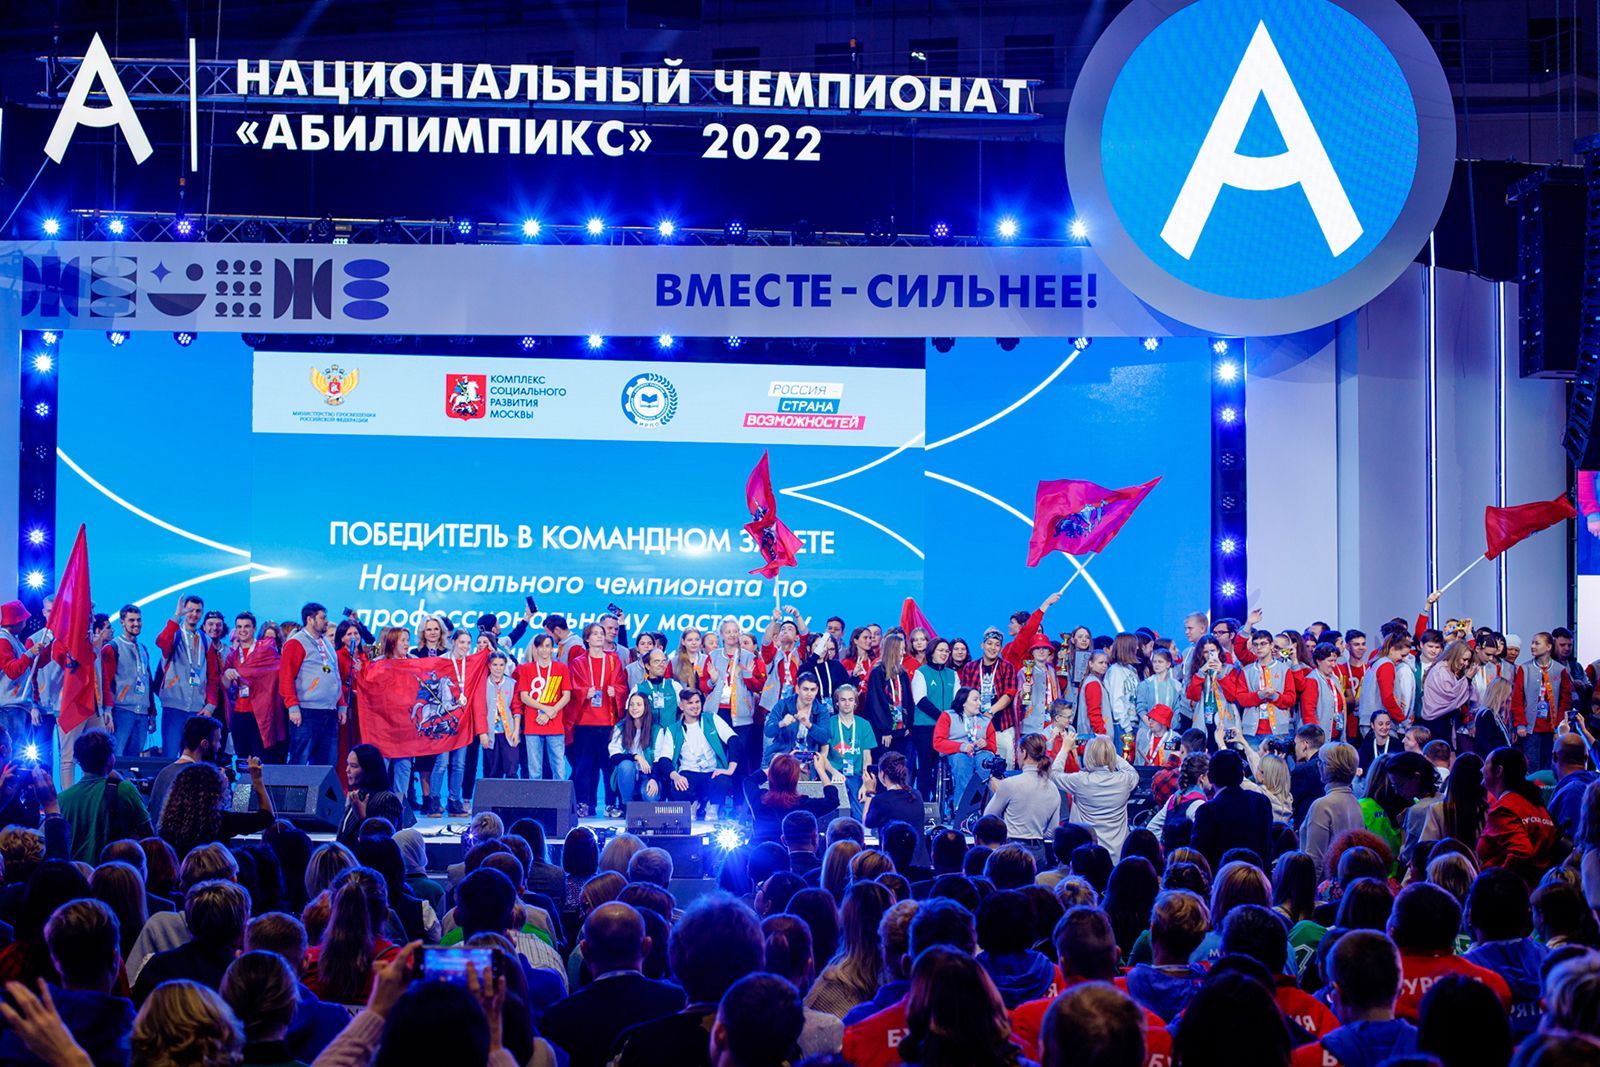 Сергей Собянин поздравил москвичей с победой на национальном чемпионате Абилимпикс